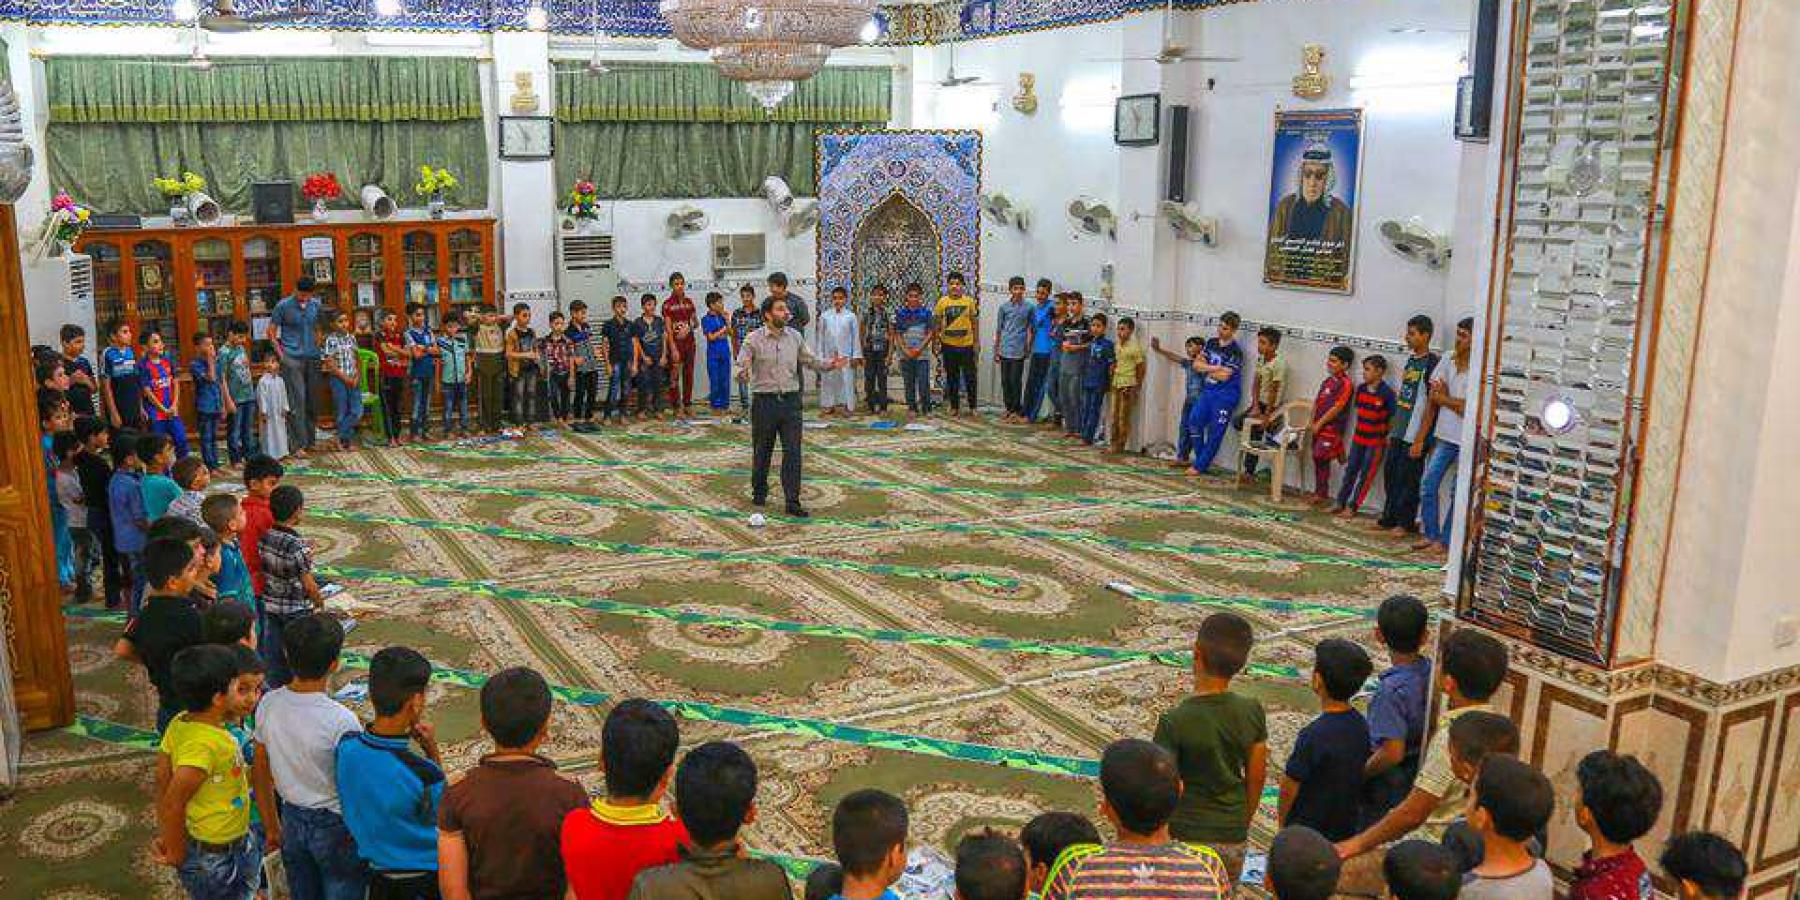 قسم الشؤون الدينية ينقل تجربة برنامج الزائر الصغير الى المزارات والجوامع والمساجد والحسينيات لخدمة شريحة الأطفال والأشبال في النجف والعاصمة بغداد